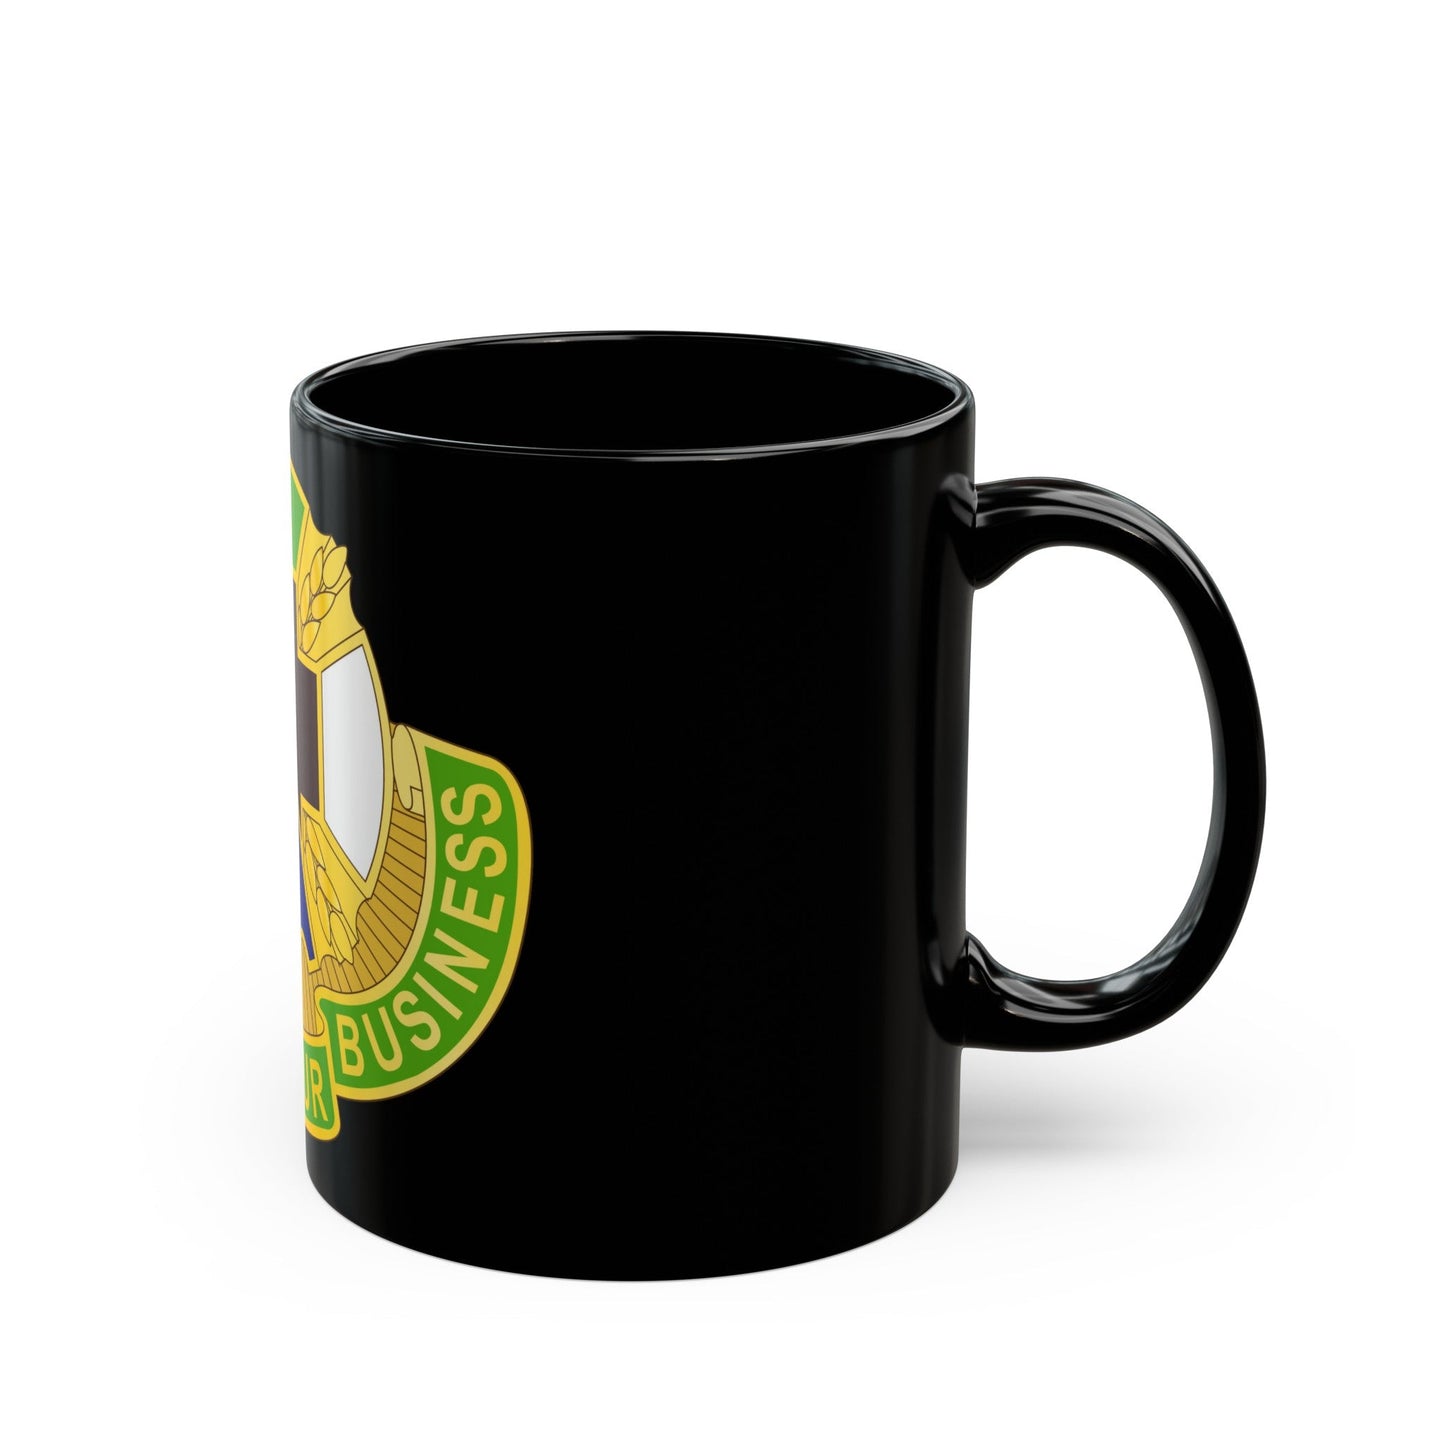 388 Medical Battalion (U.S. Army) Black Coffee Mug-The Sticker Space